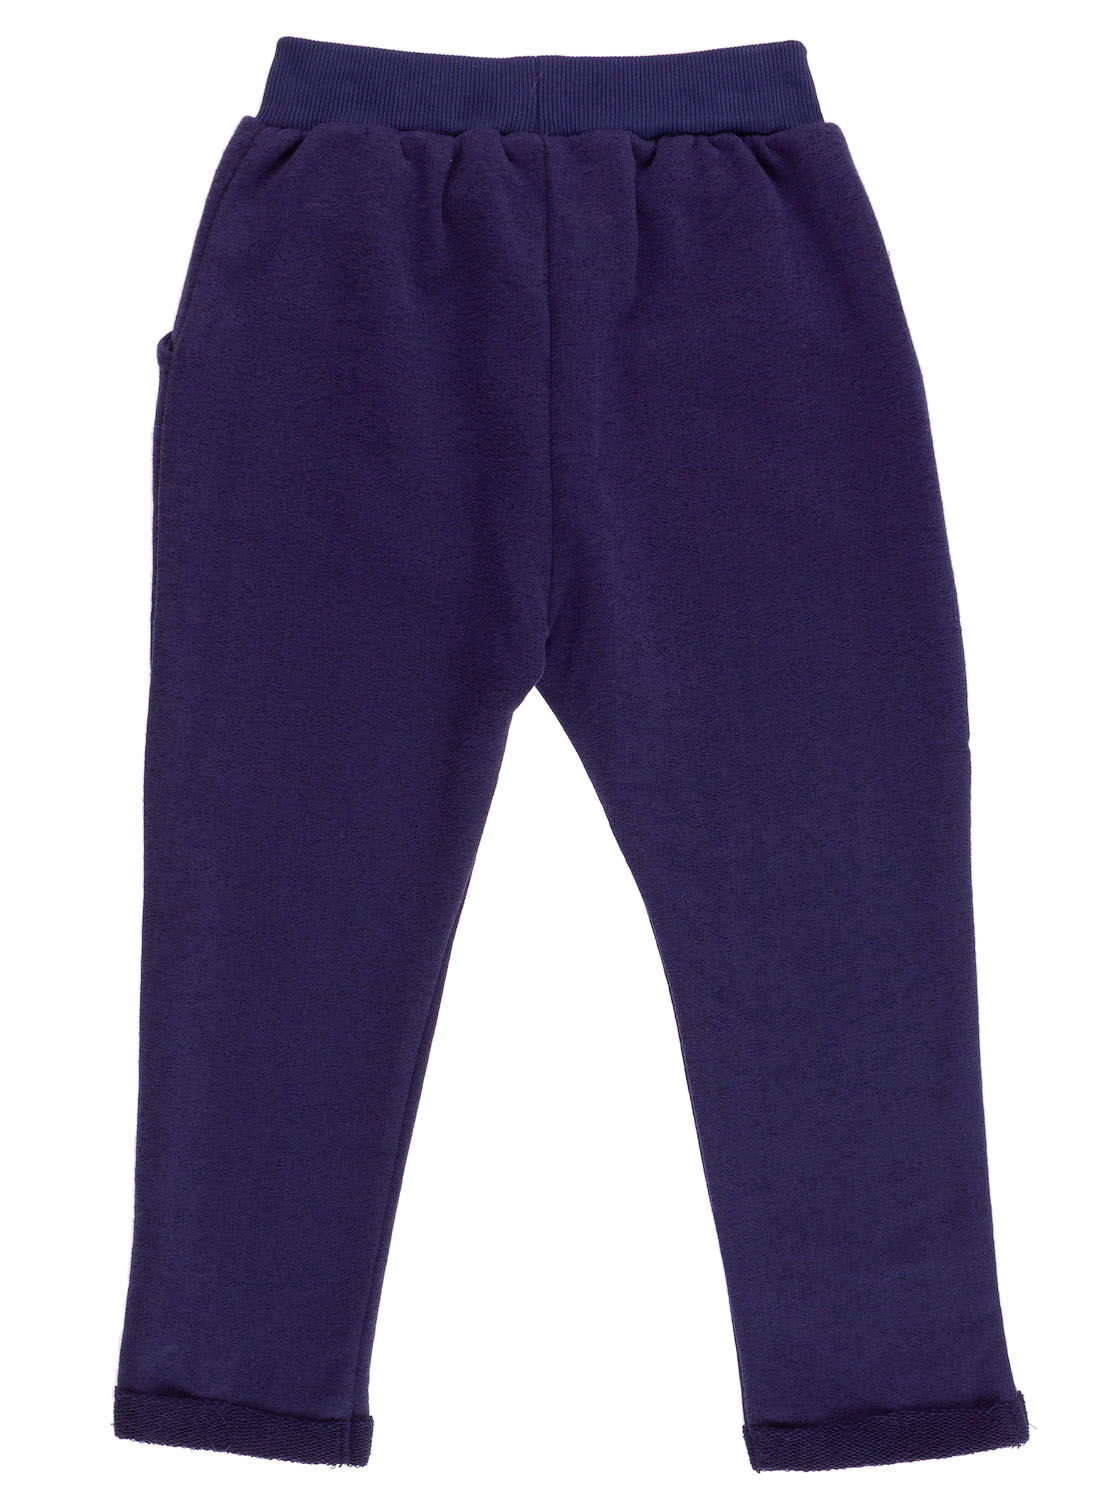 Штаны спортивные для мальчика Breeze синие 11228 - фото